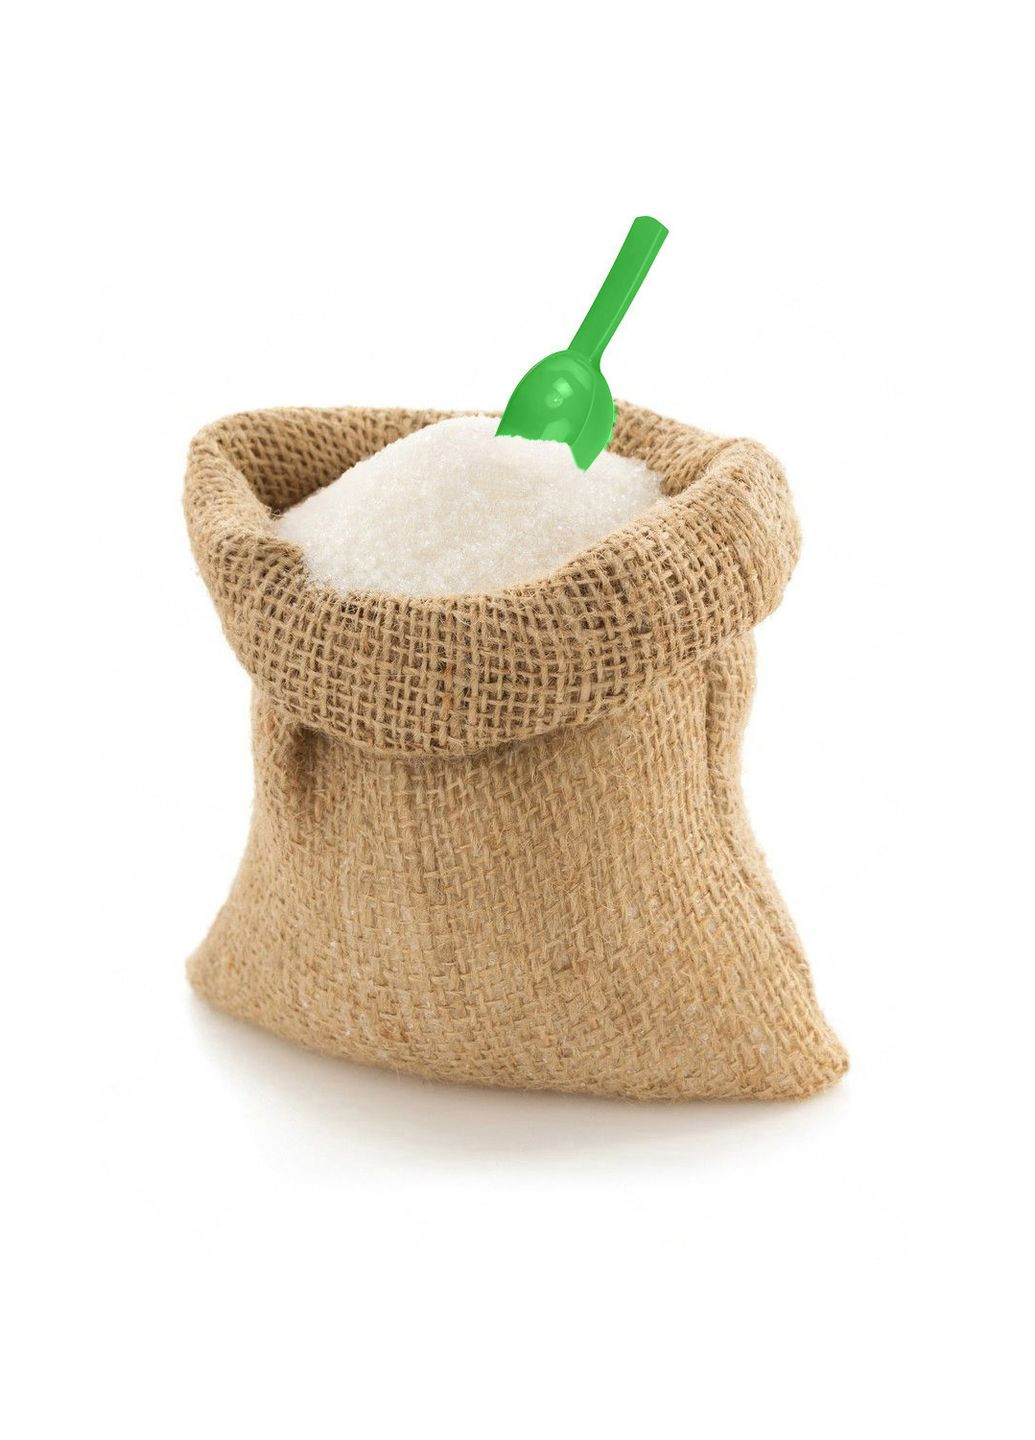 Совок пластиковый для сахара, специй и сыпучих продуктов МЕД (274060183)